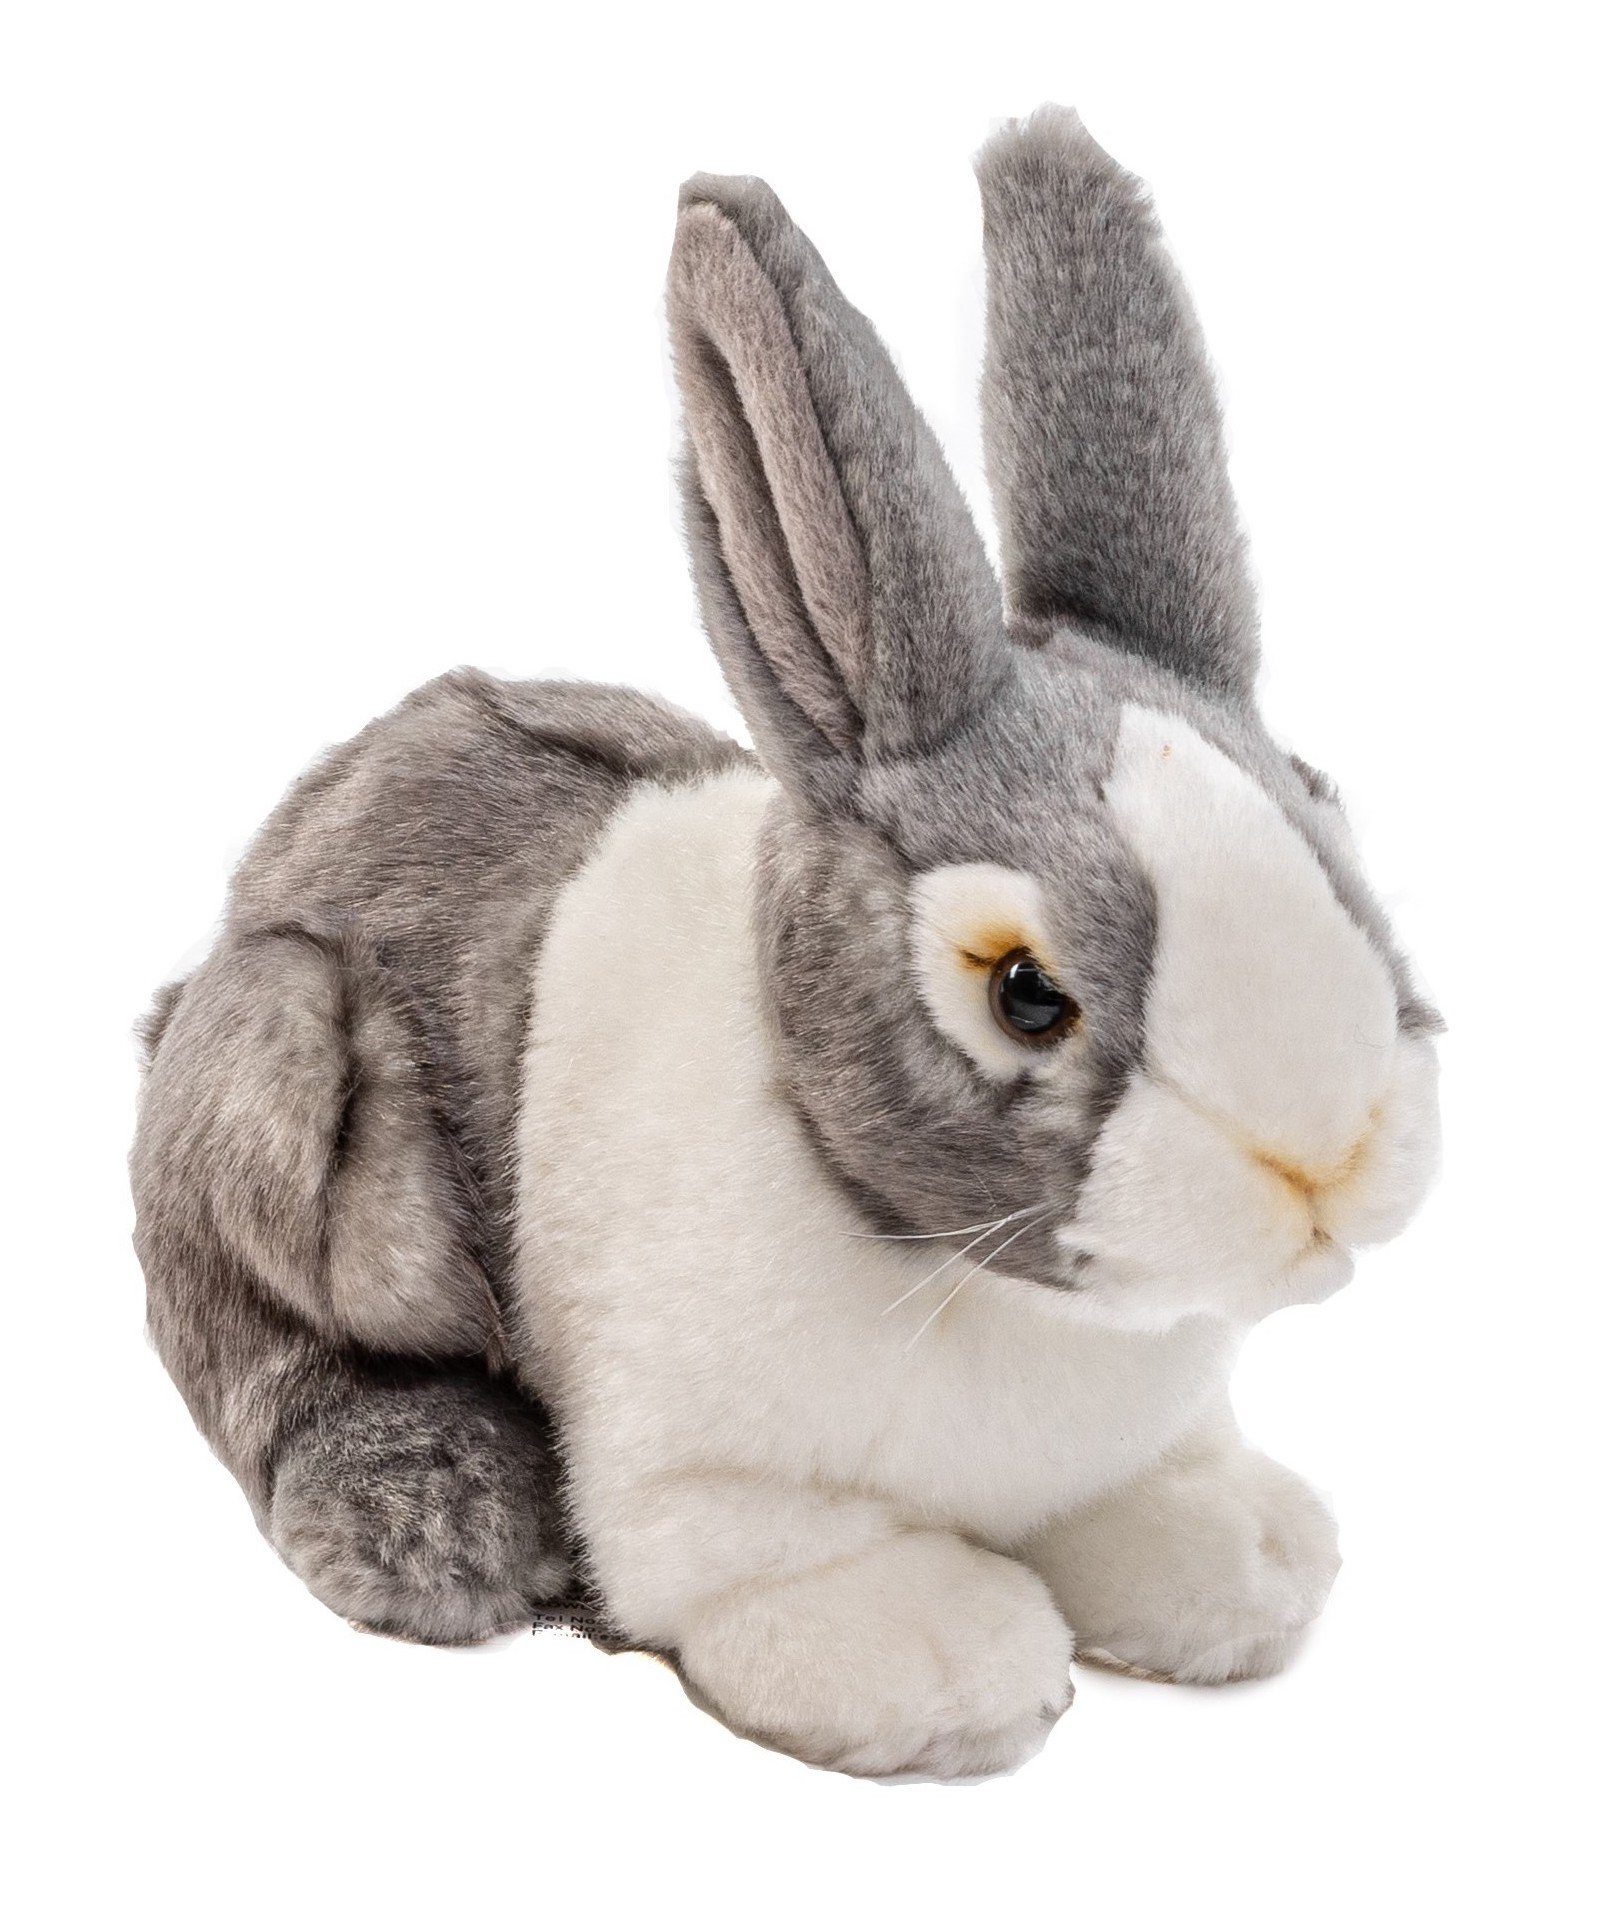 Uni-Toys Kuscheltier Kaninchen, sitzend - grau oder braun - 20 cm - Plüsch-Hase, Plüschtier, zu 100 % recyceltes Füllmaterial grau-weiß | Kuscheltiere